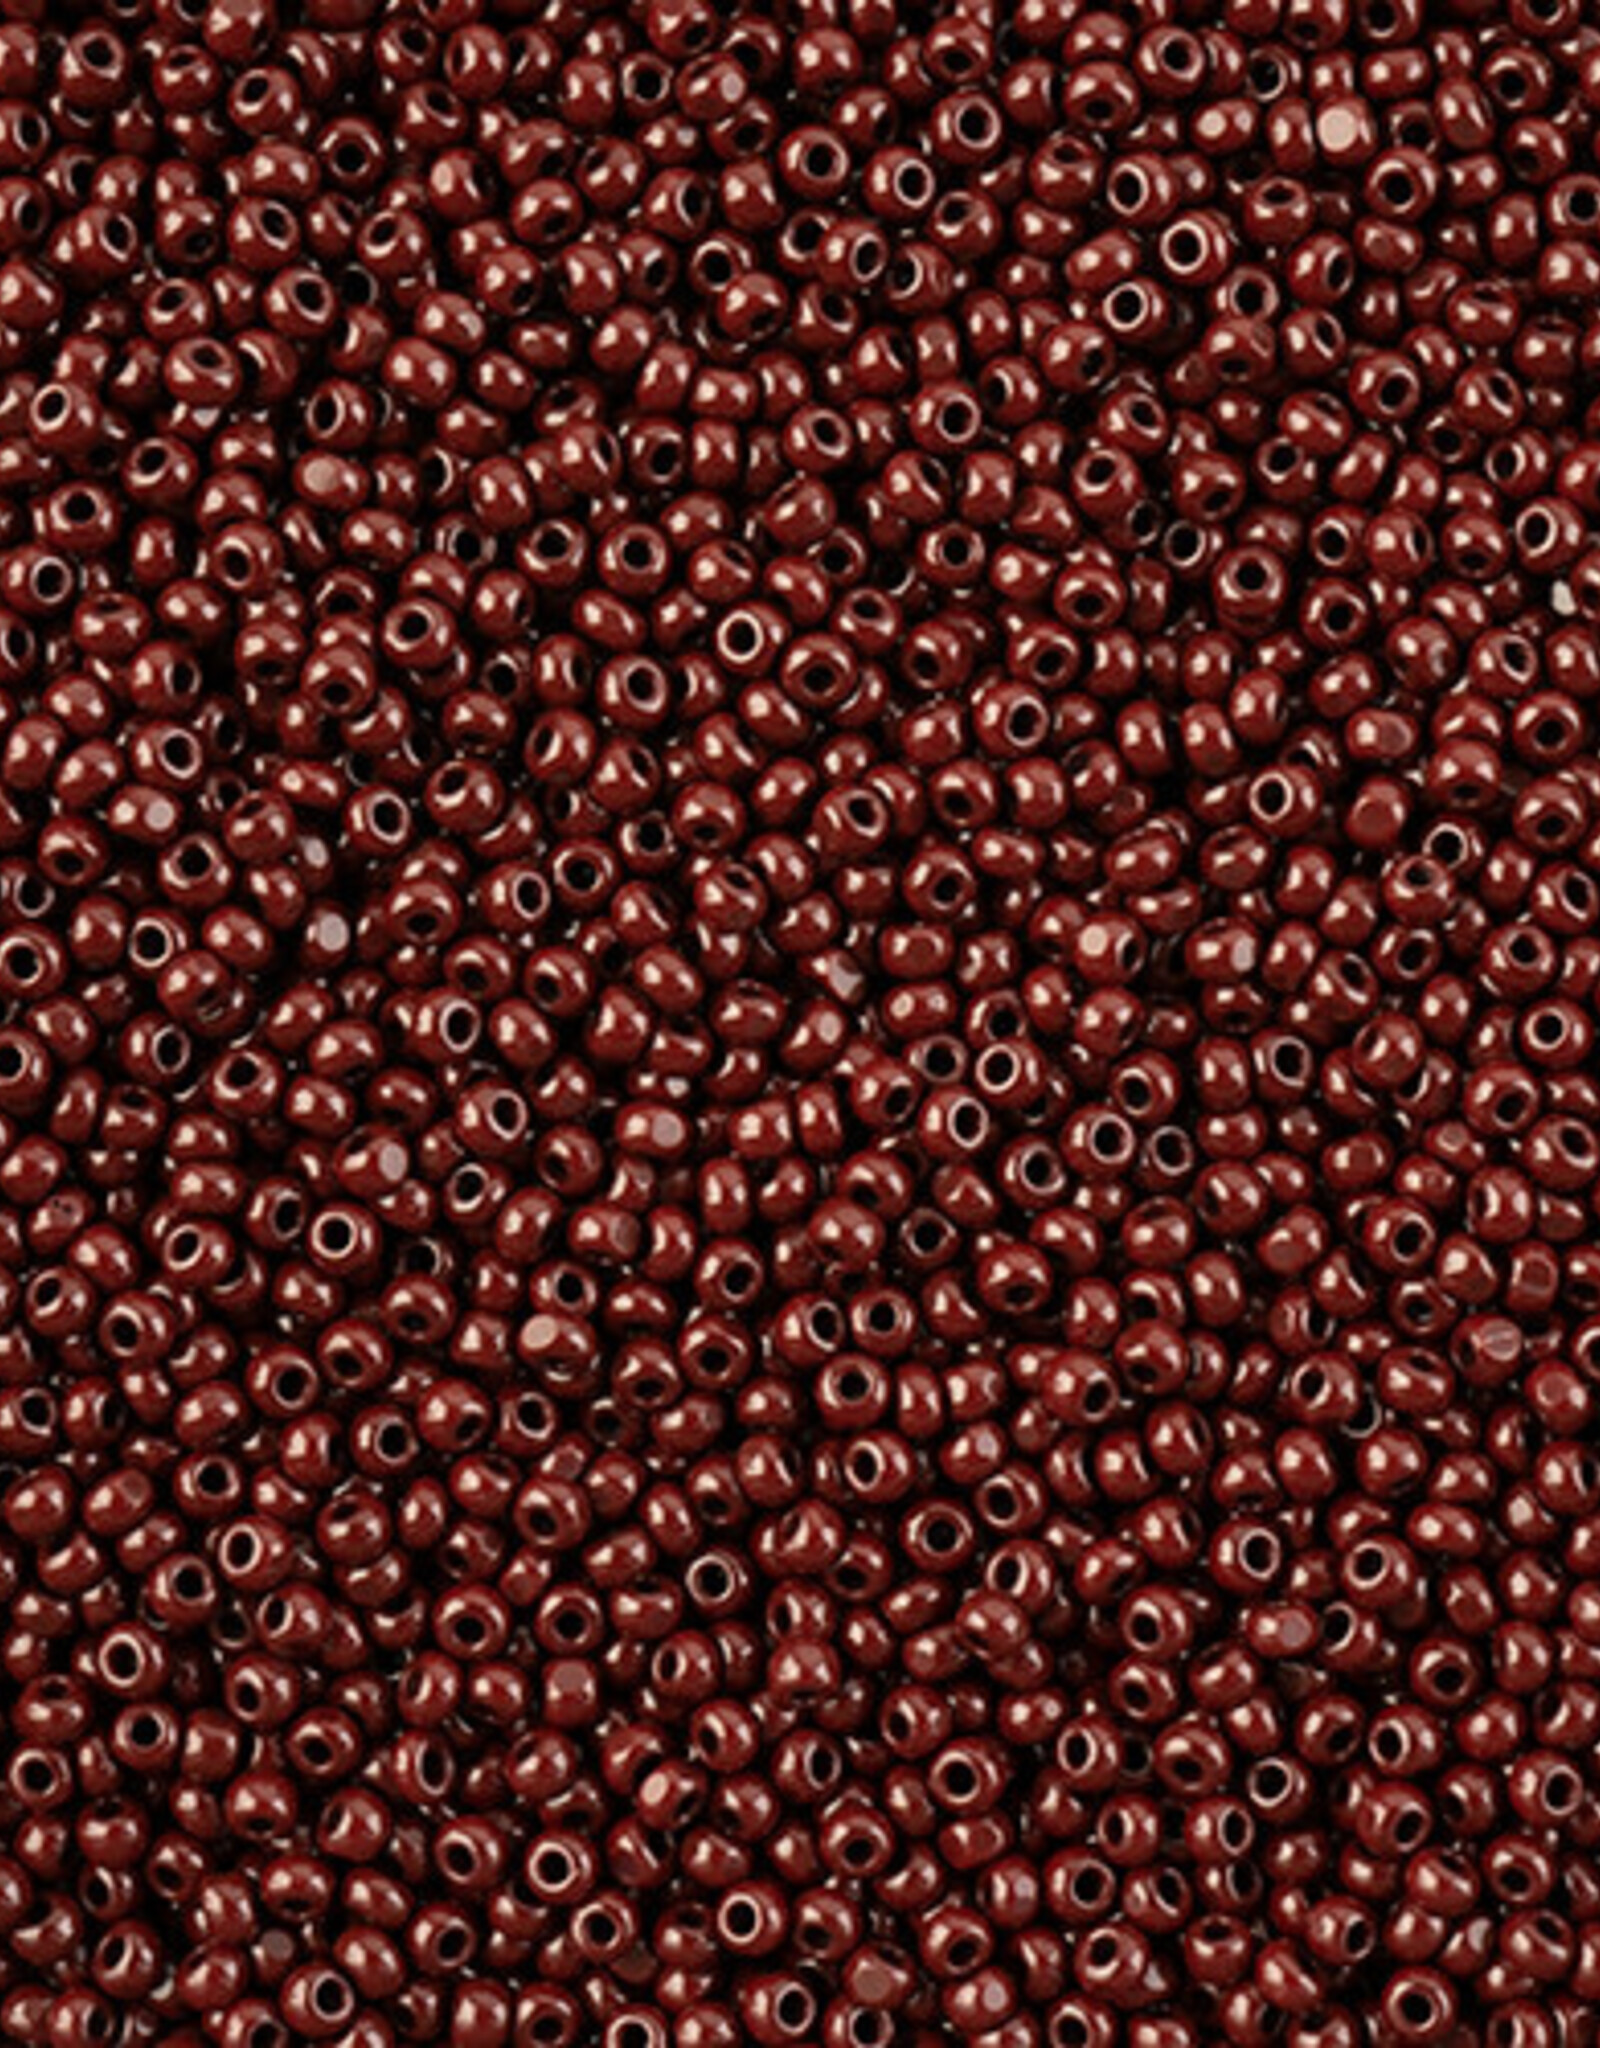 Seed Bead 11/0 Cut Opaque Dark Brown 100 g Bag Loose